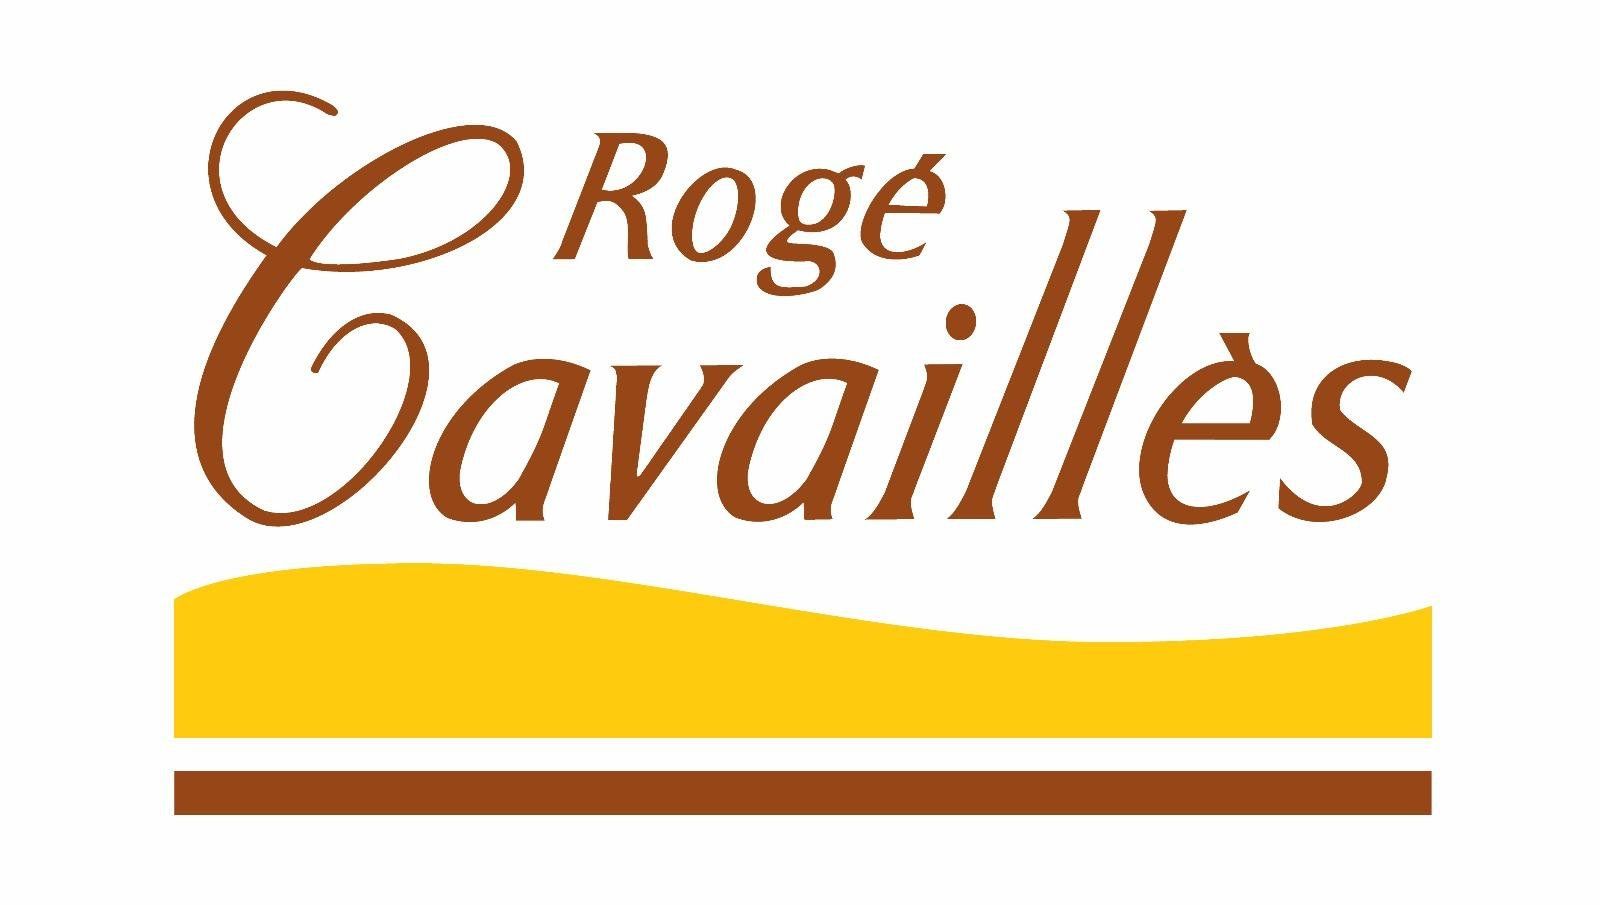 Rogé Cavaillès - Porticcio - Ajaccio